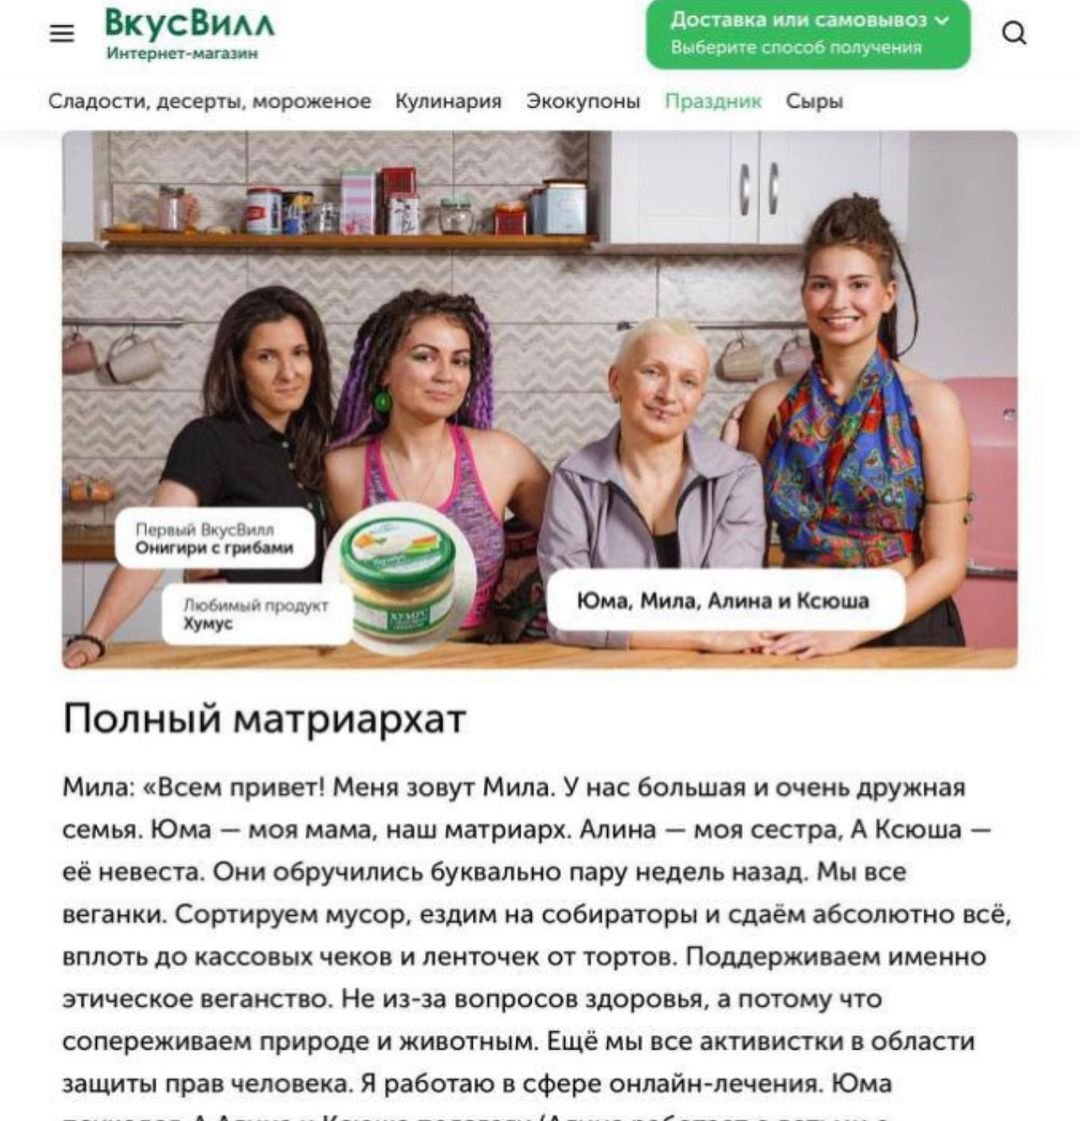 Ксения Собчак посмеялась над "отмазкой" магазина "ВкусВилл", удалившего рекламу